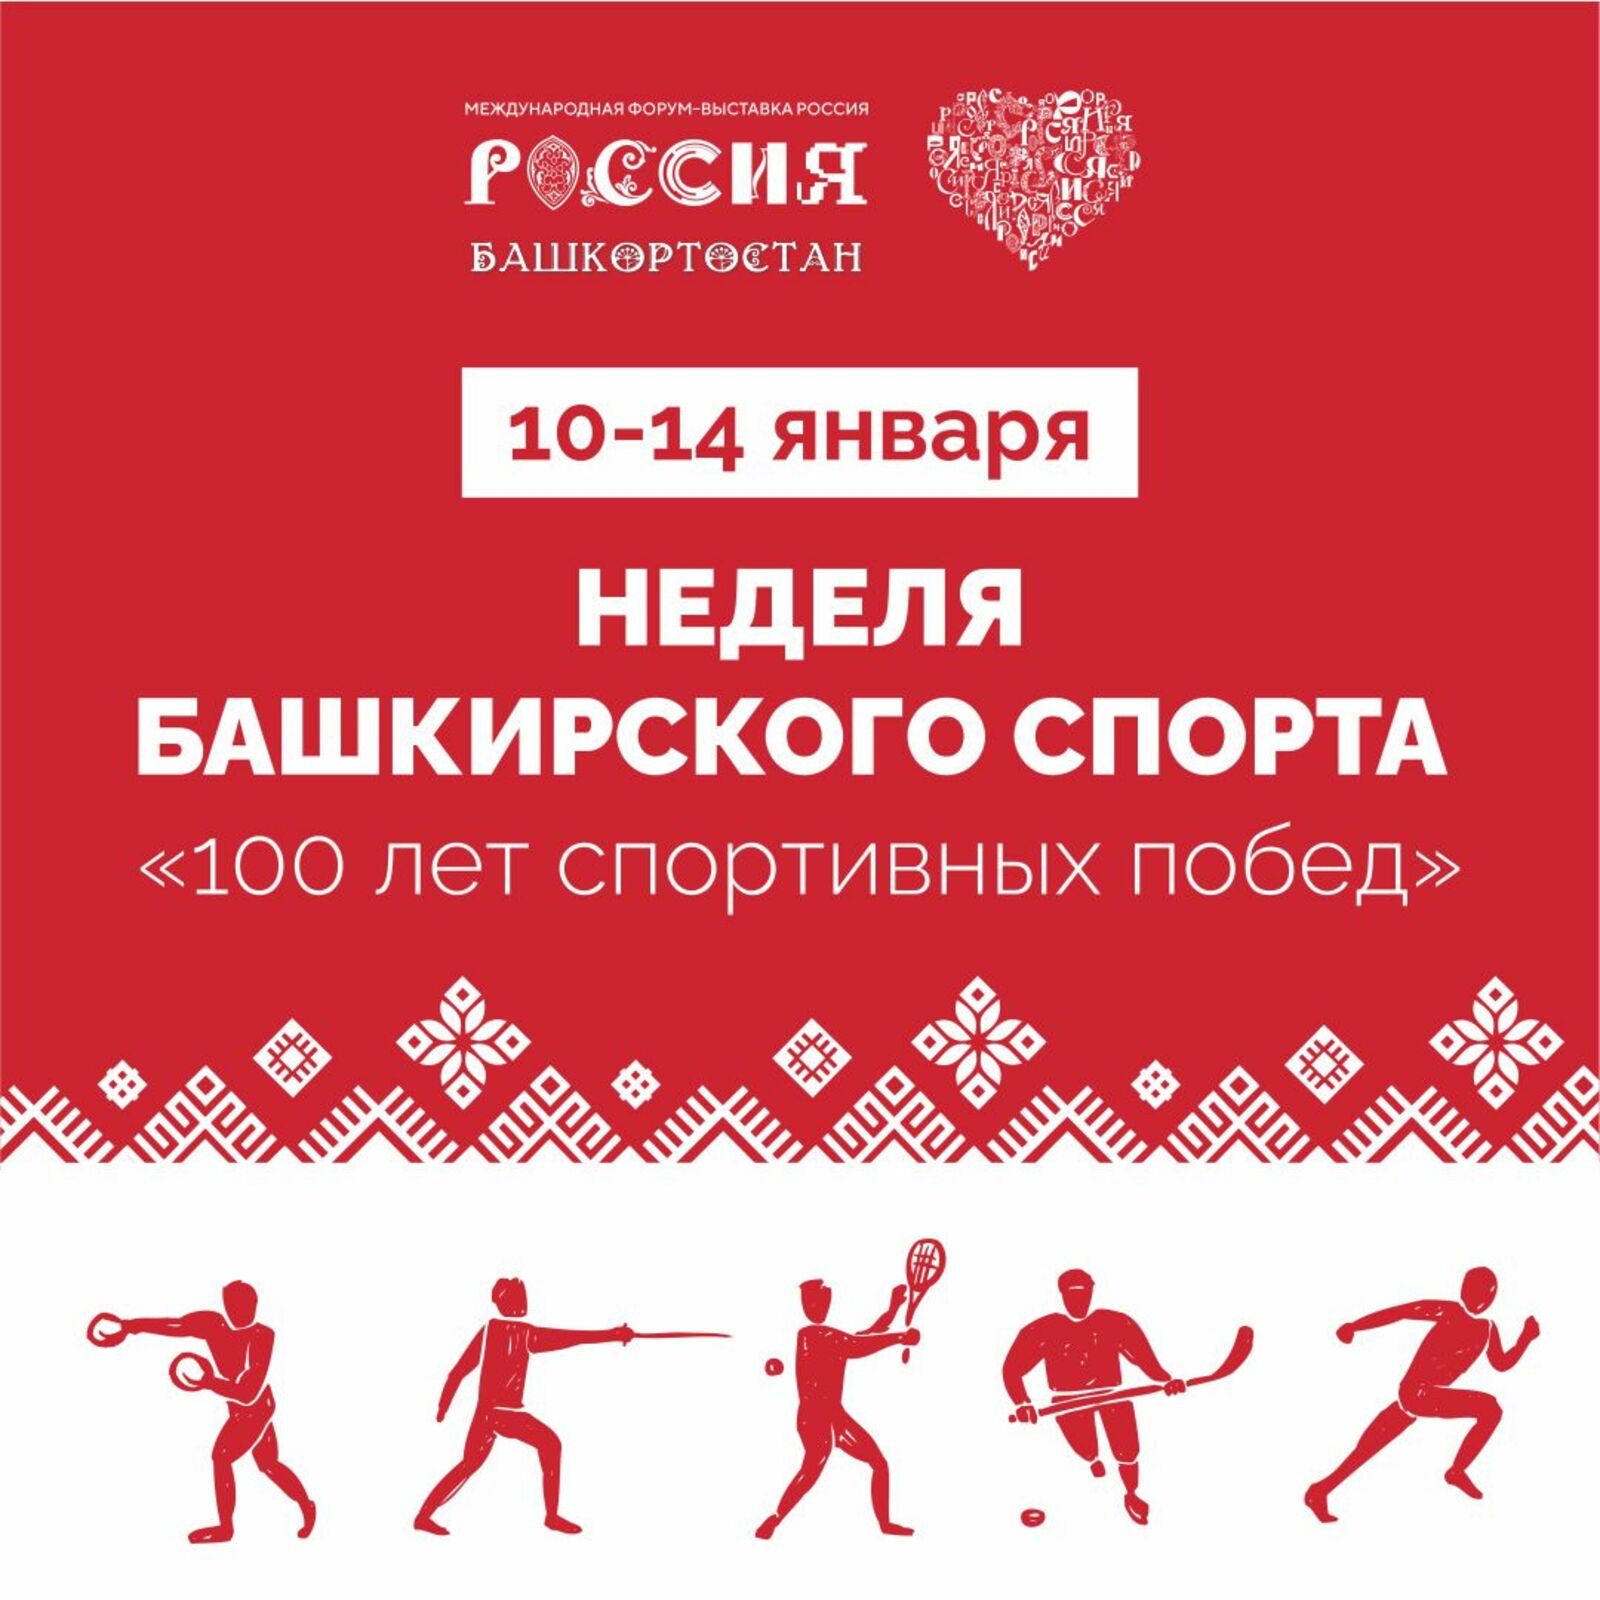 Неделя башкирского спорта пройдет на ВДНХ в Москве